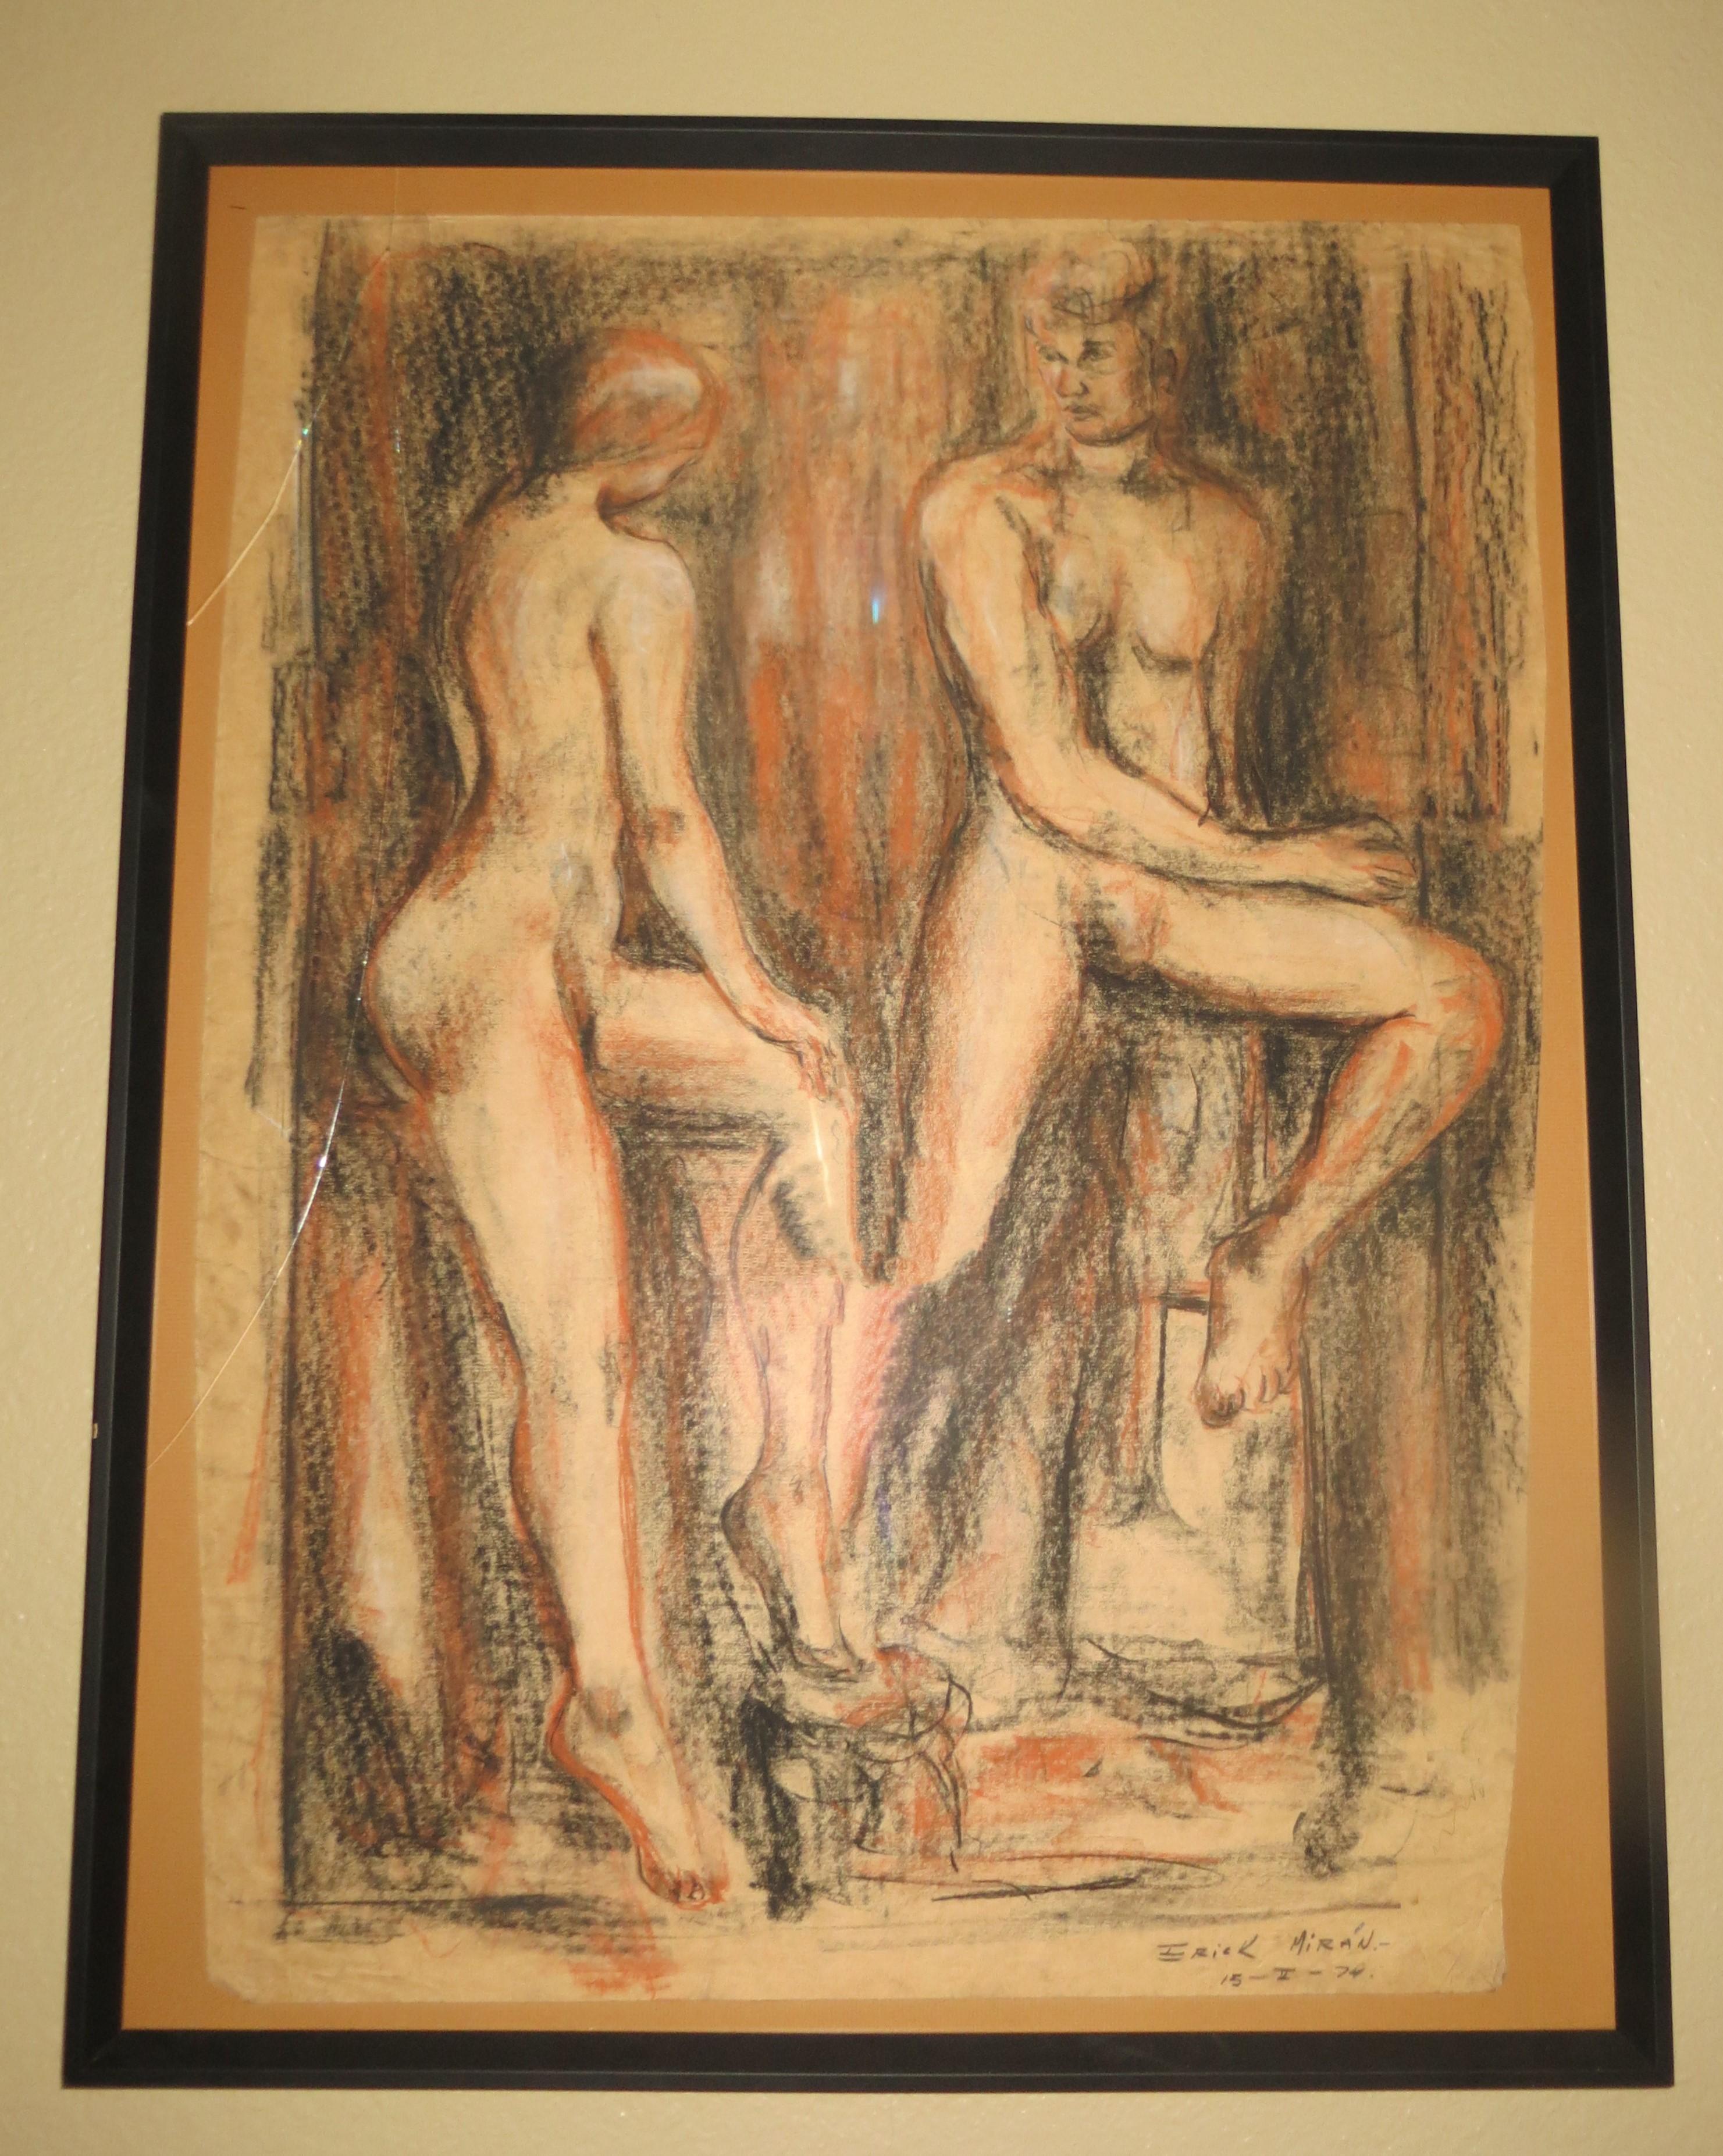 Paar nackte Paar, pastellfarbene Zeichnung, signiert Erik Miran 1976